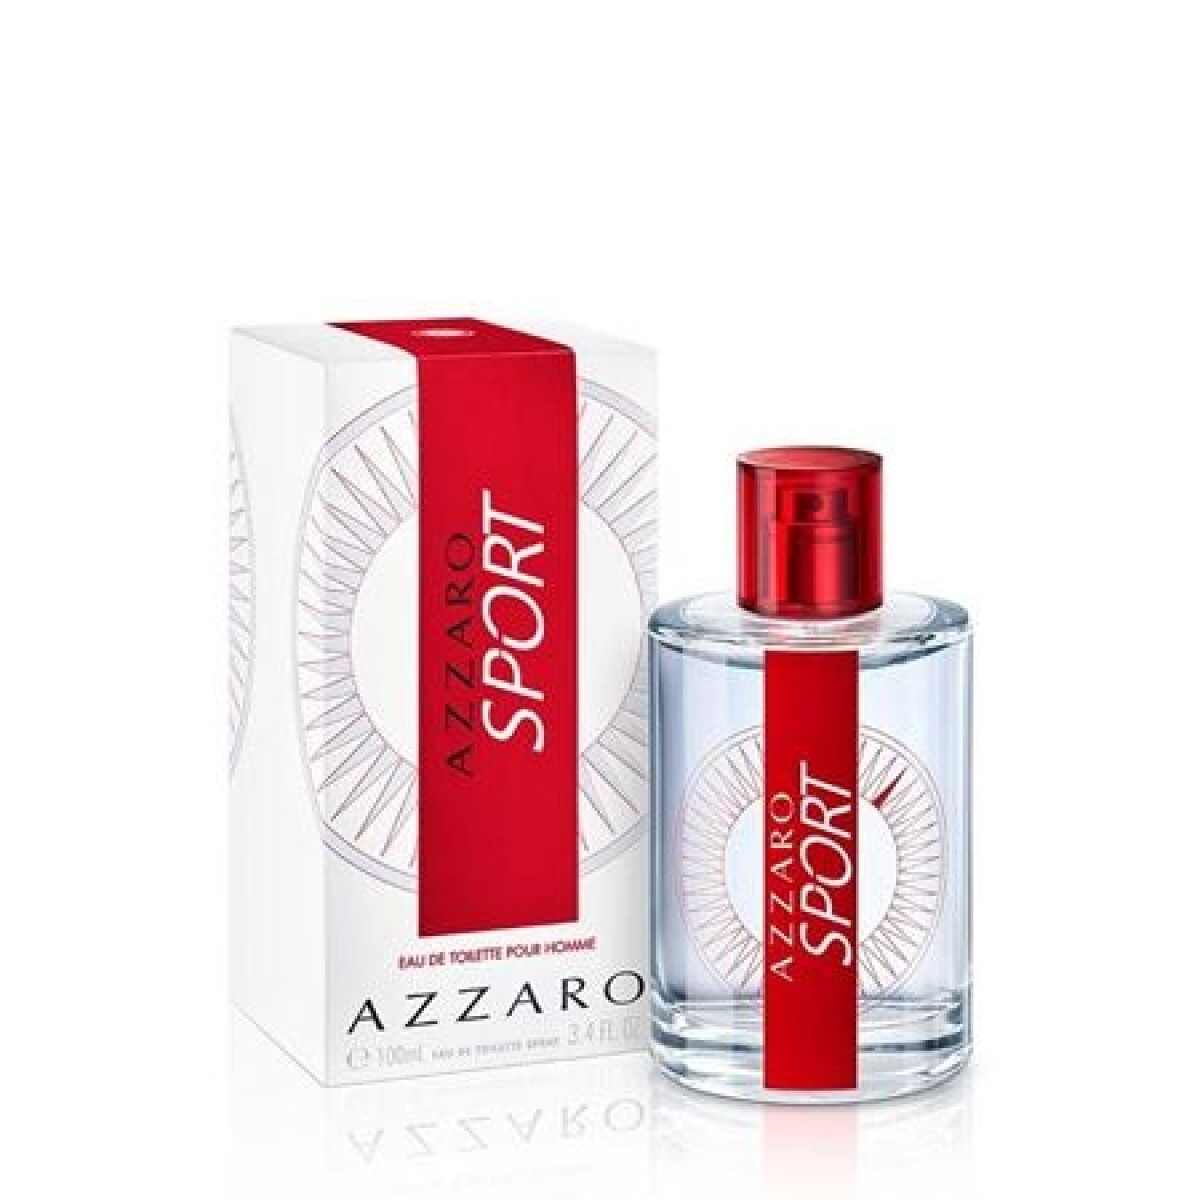 Perfume Azzaro Sport Edt 100 Ml. 